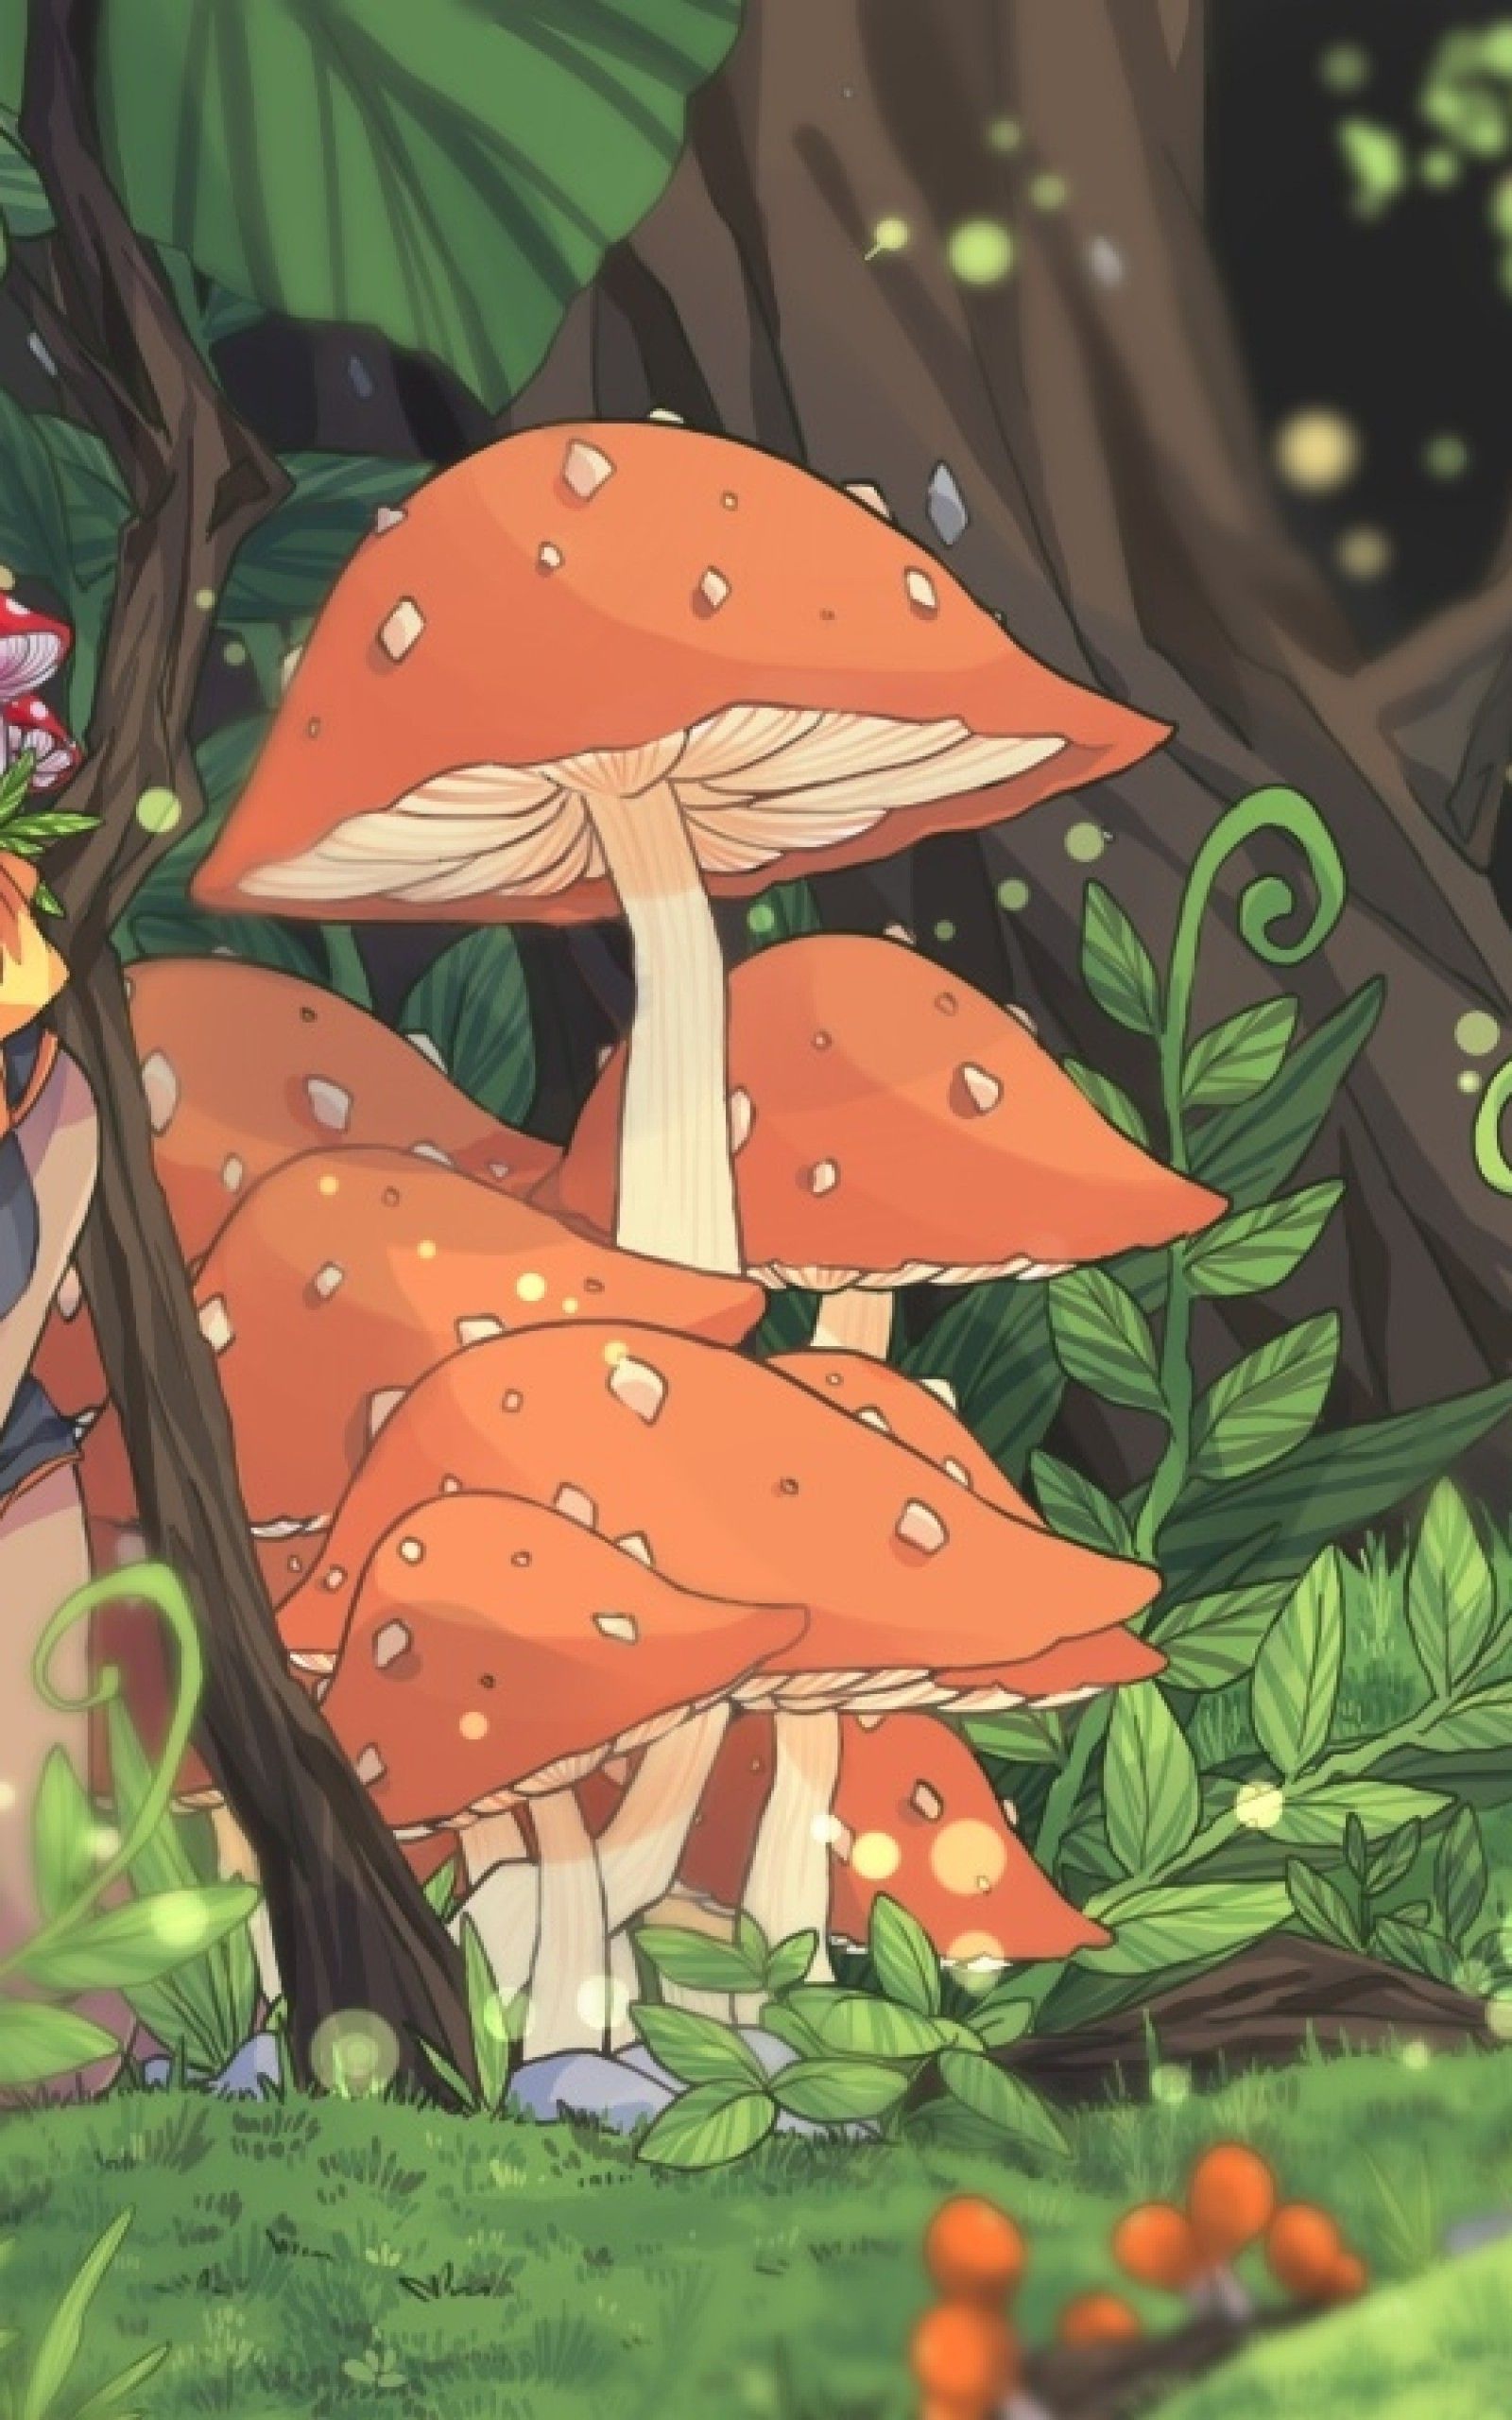 cute mushroom cartoon wallpaper